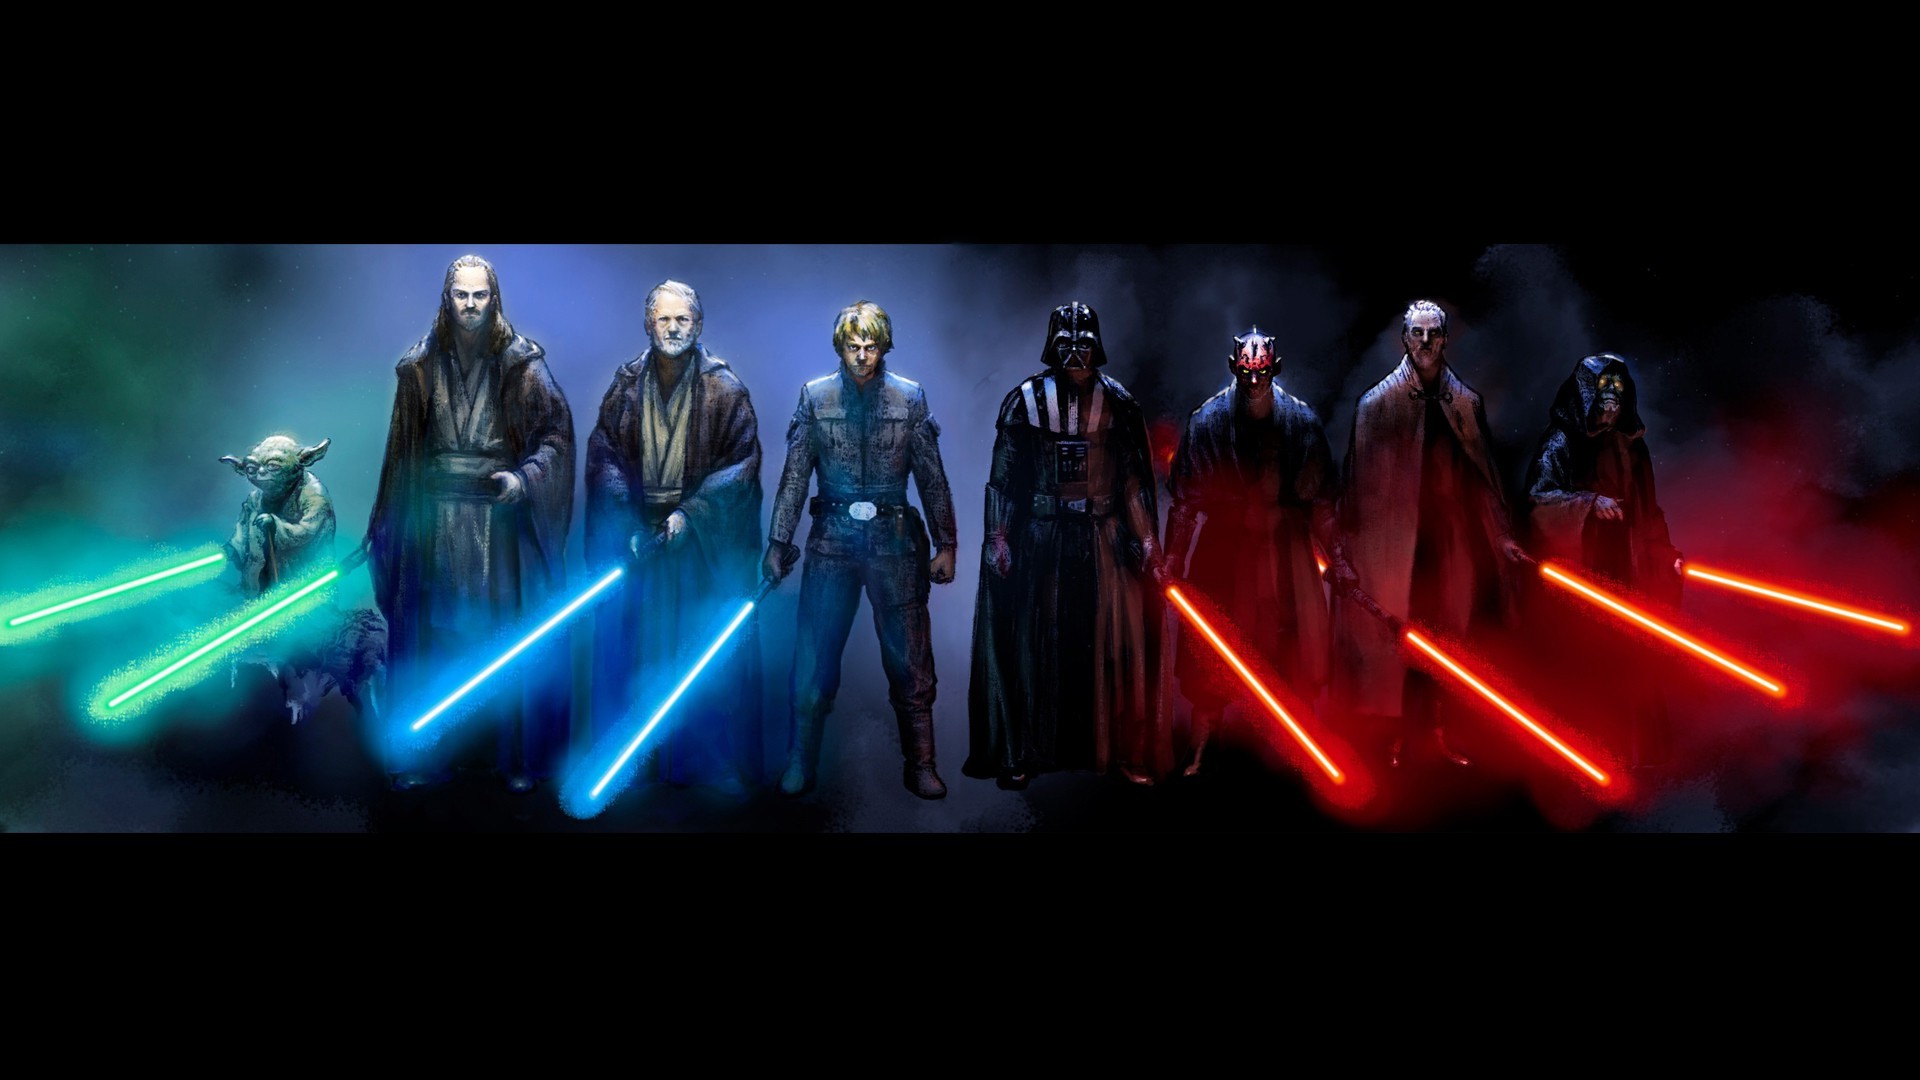 Star Wars, Luke Skywalker, Darth Vader, Darth Maul, Obi Wan Kenobi